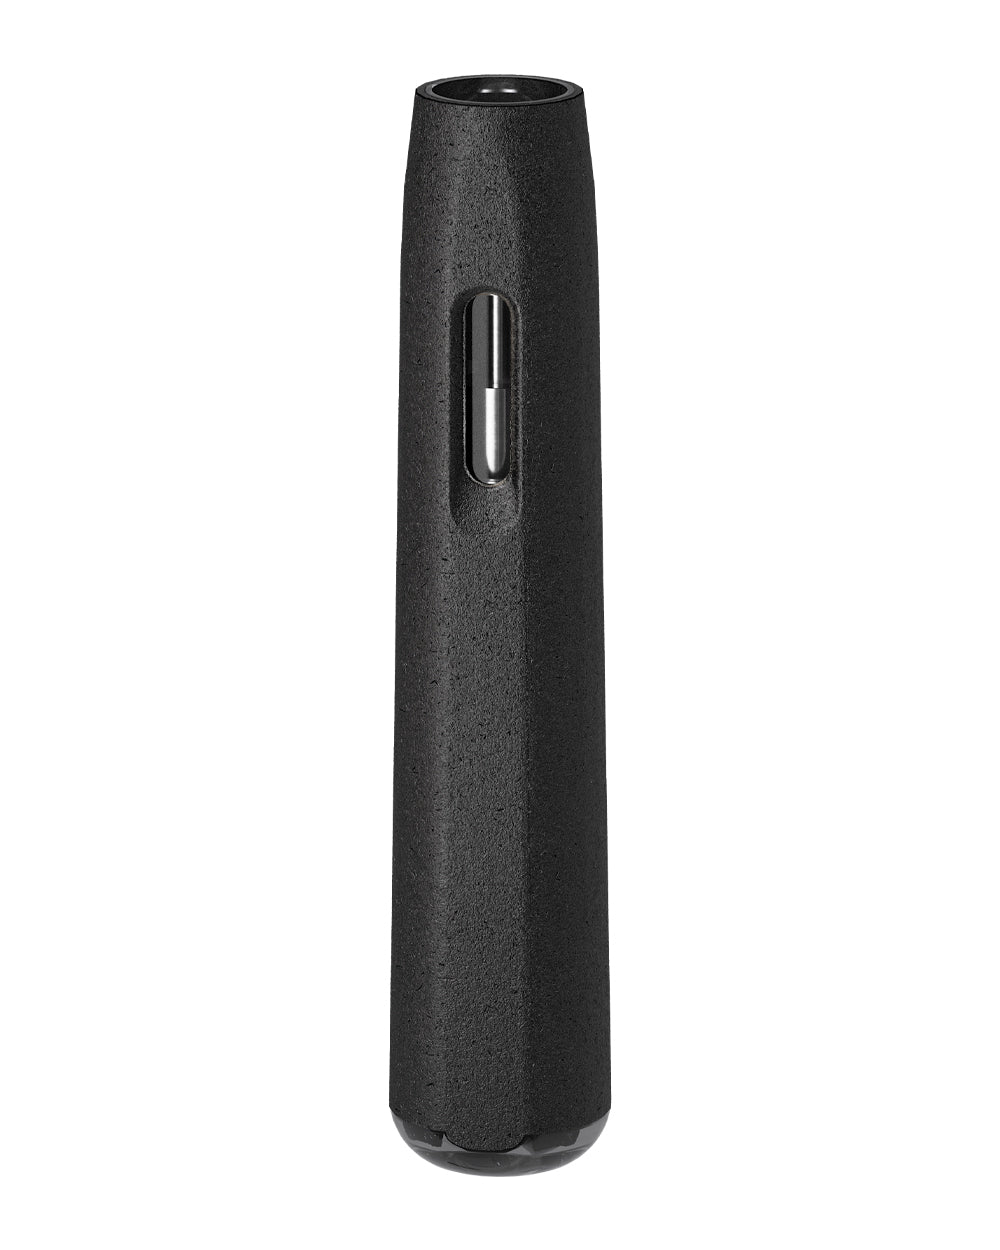 AVD | Stem Black Hemp Plastic Blend Rechargeable Disposable Vape Pen w/ Black Vortex Mouthpiece | 1mL - 220 mAh  - 2